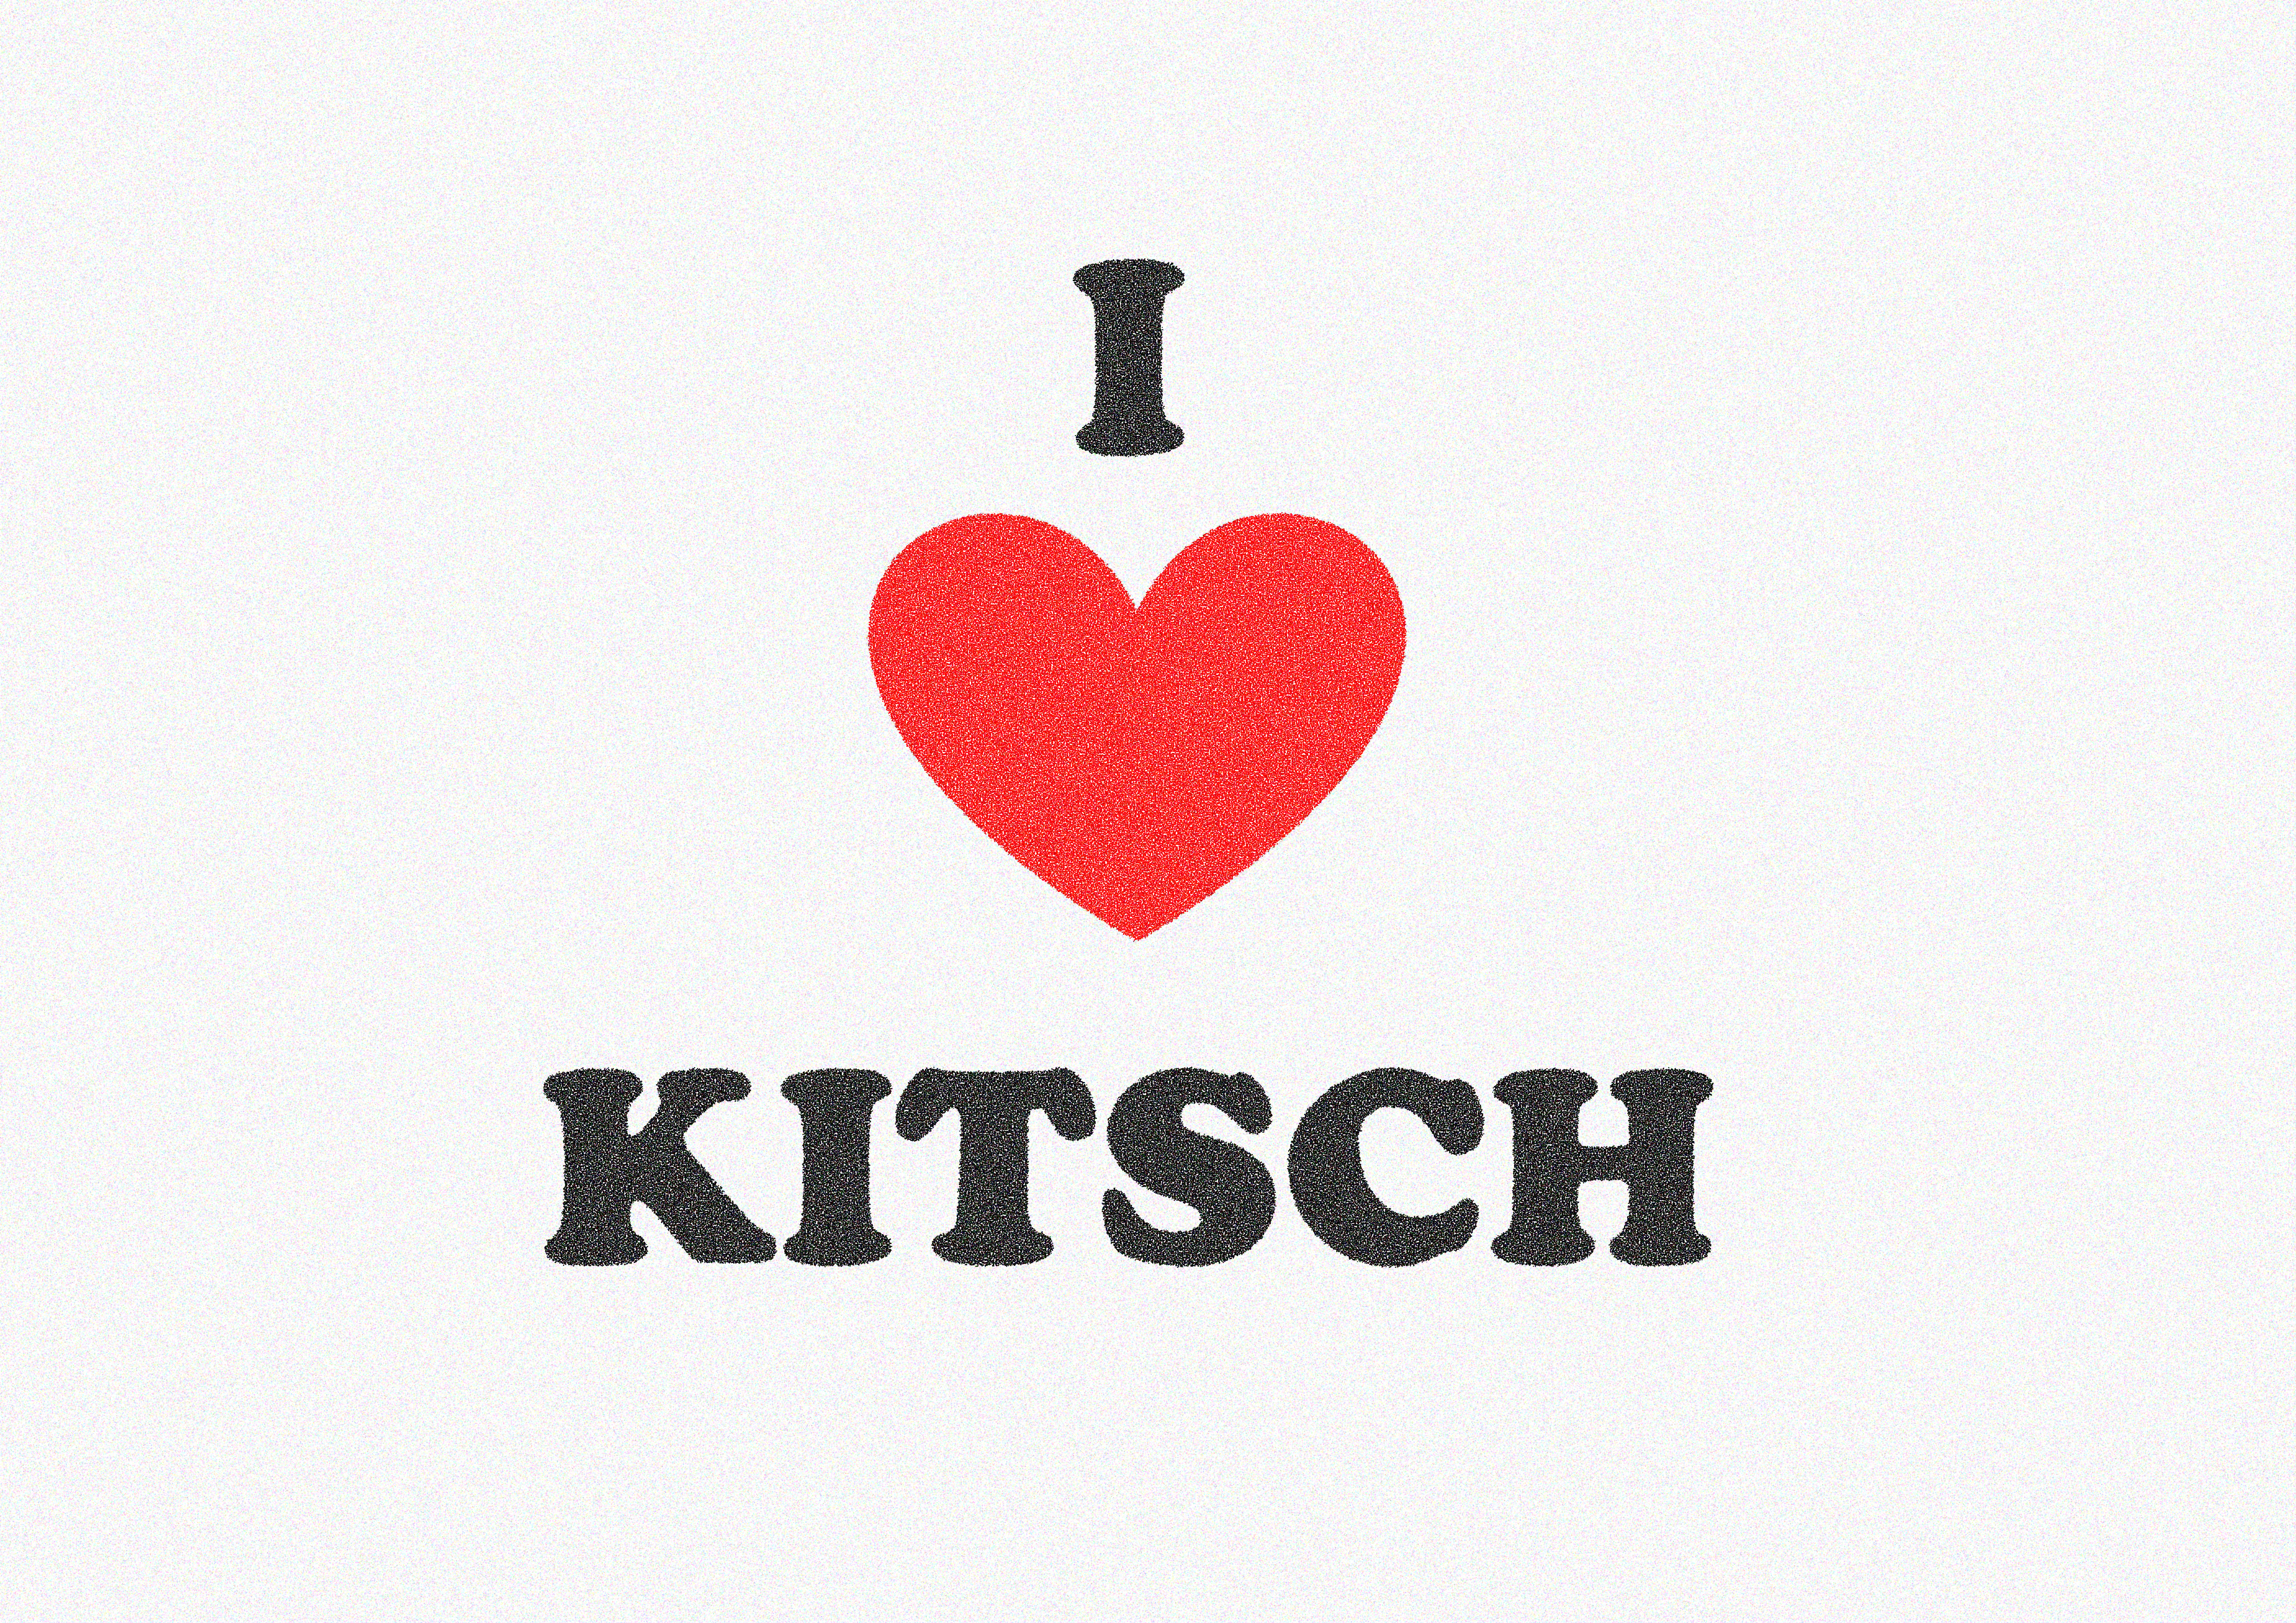 I heart kitsch #kitsch #love